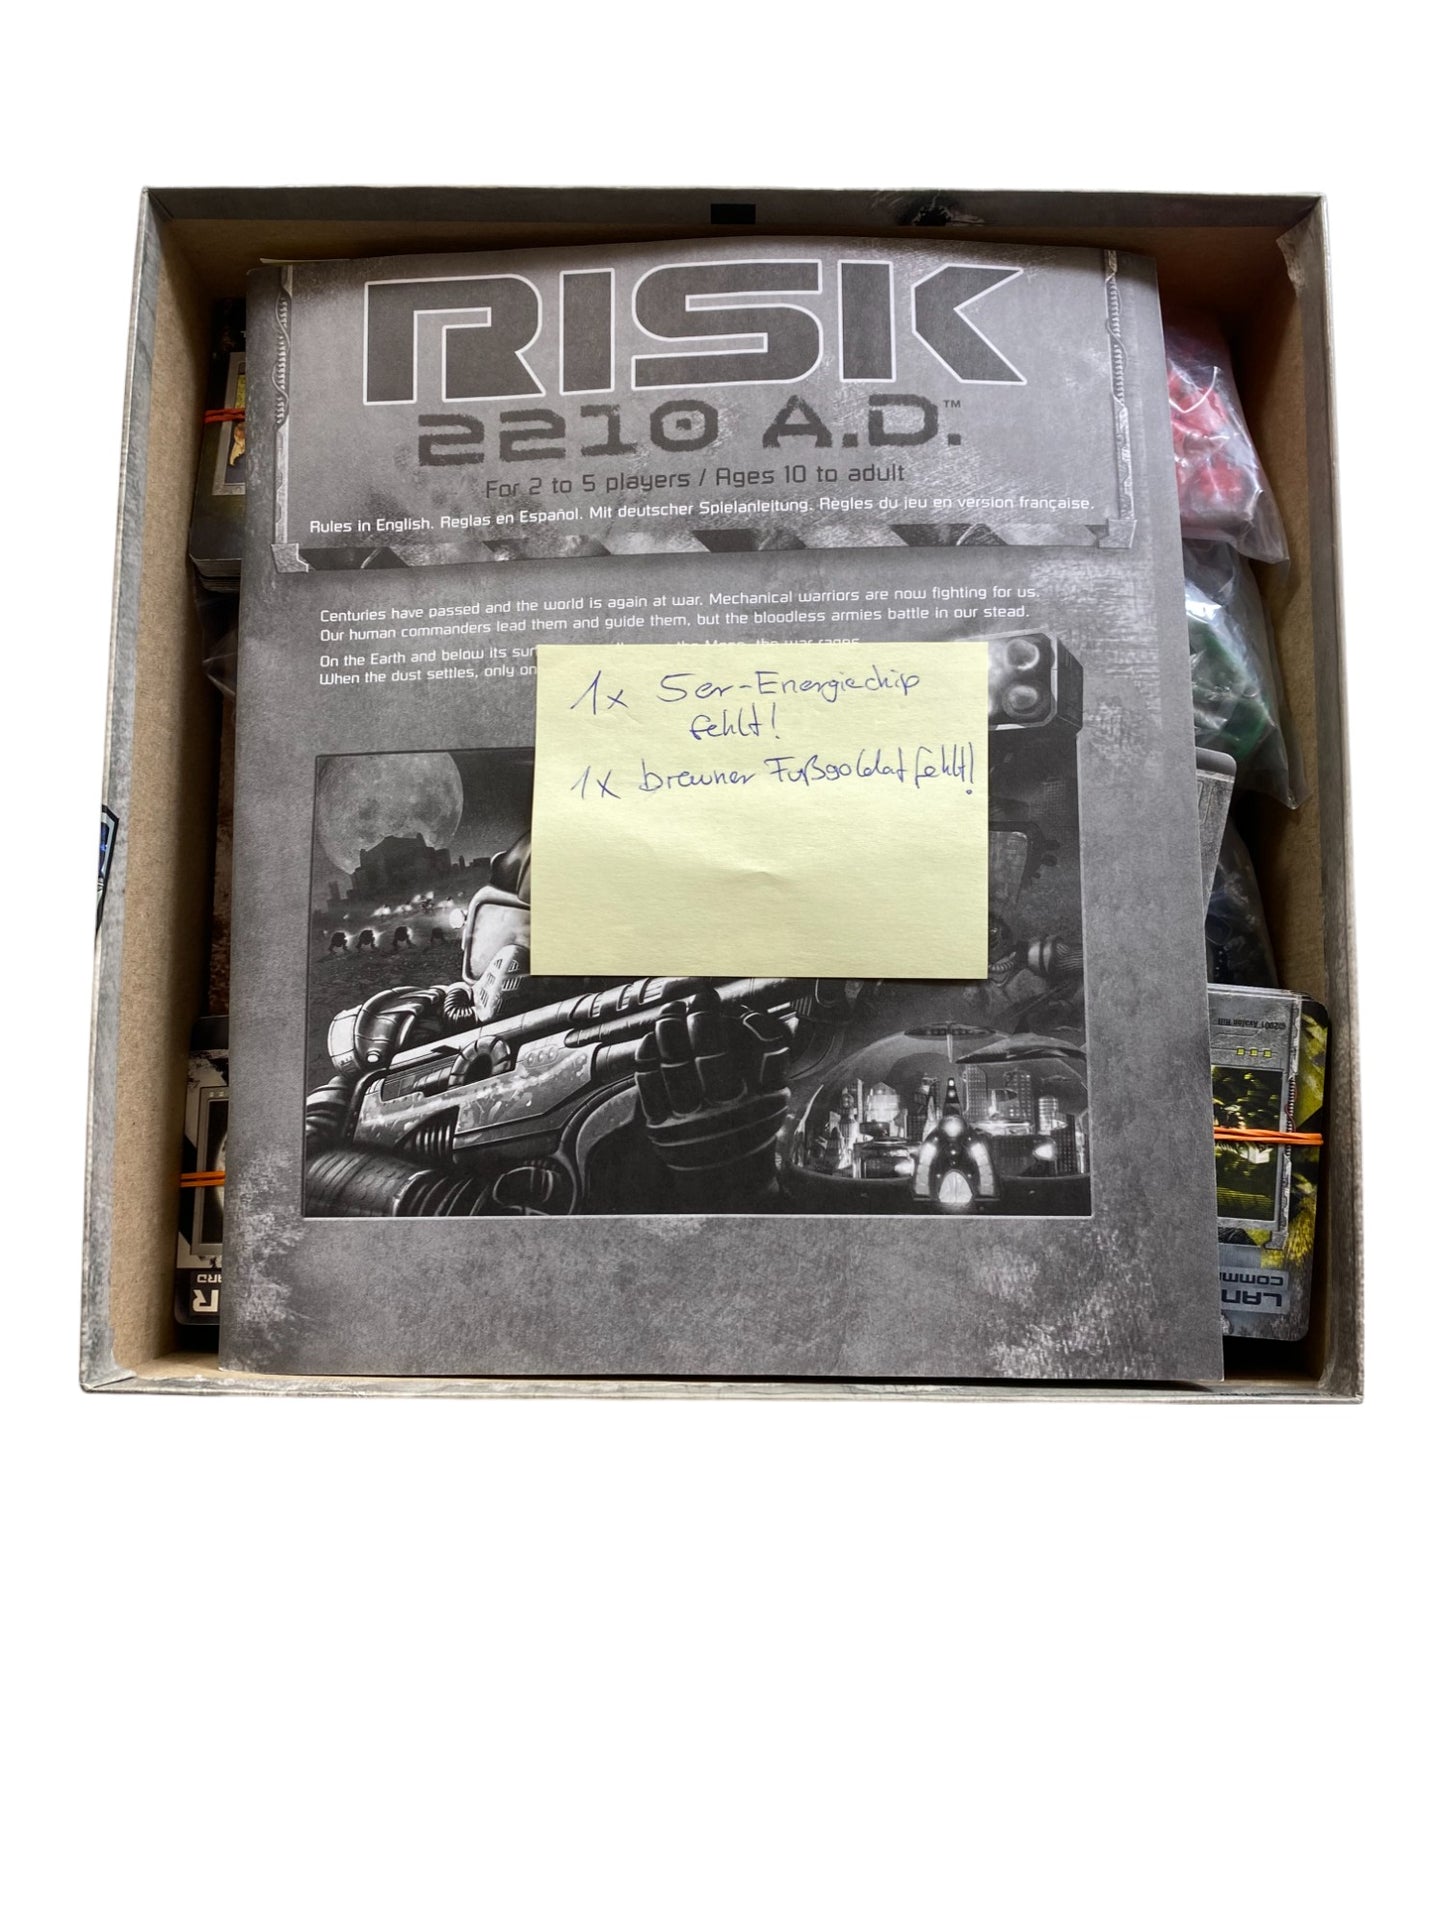 Risk 2210 A.D. - Brettspiel von Avalon Hill